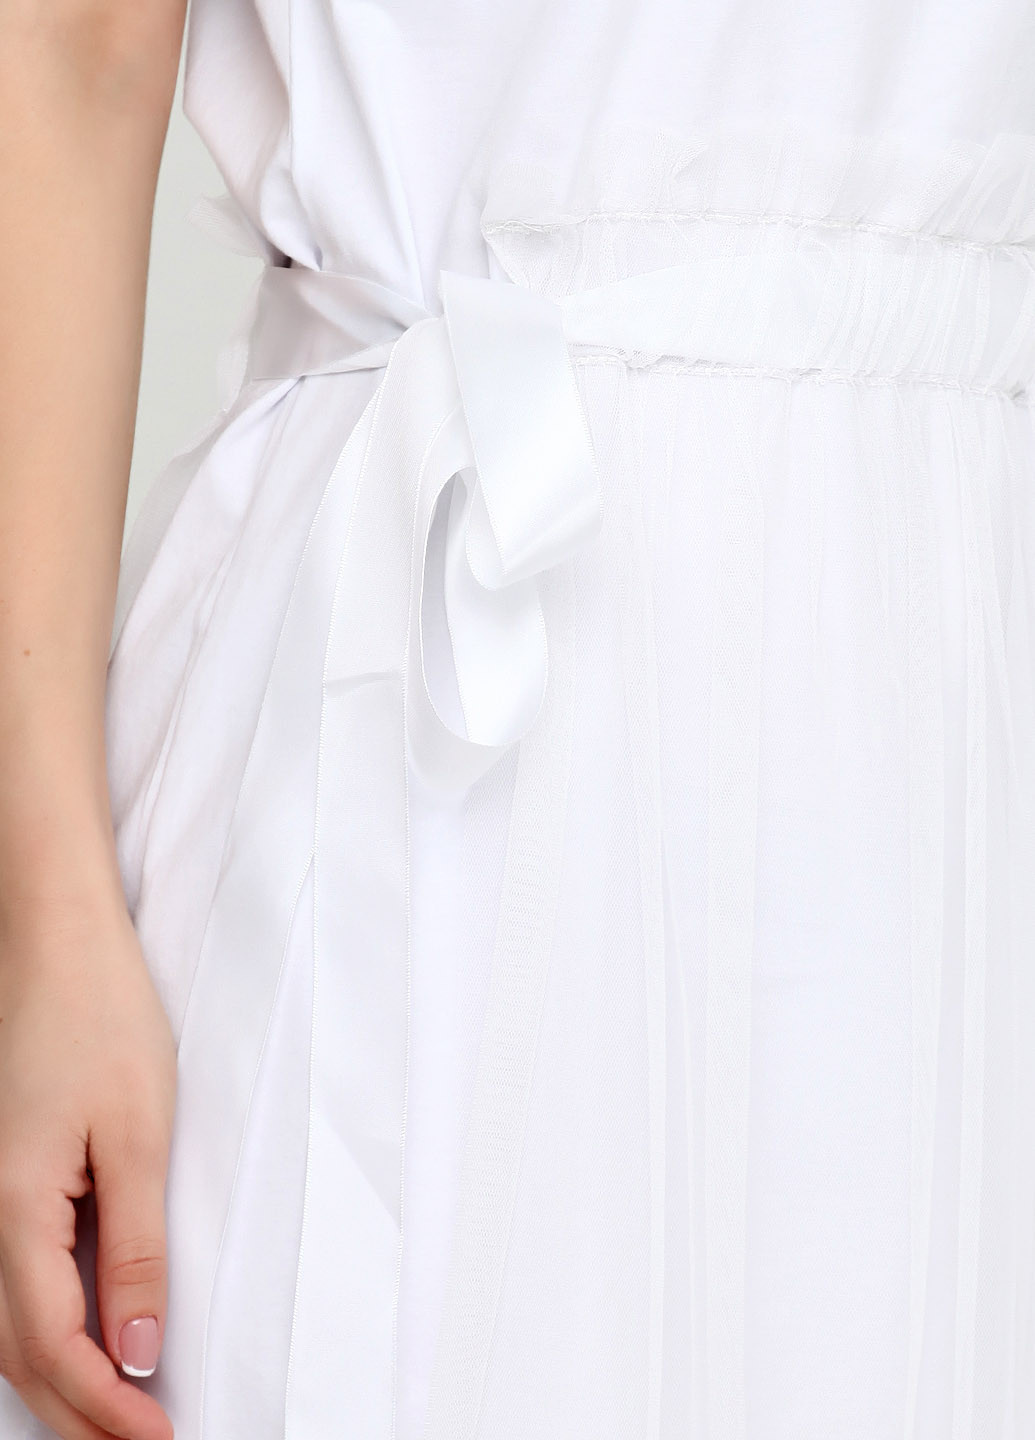 Белое кэжуал платье платье-футболка Monte Cervino с надписью